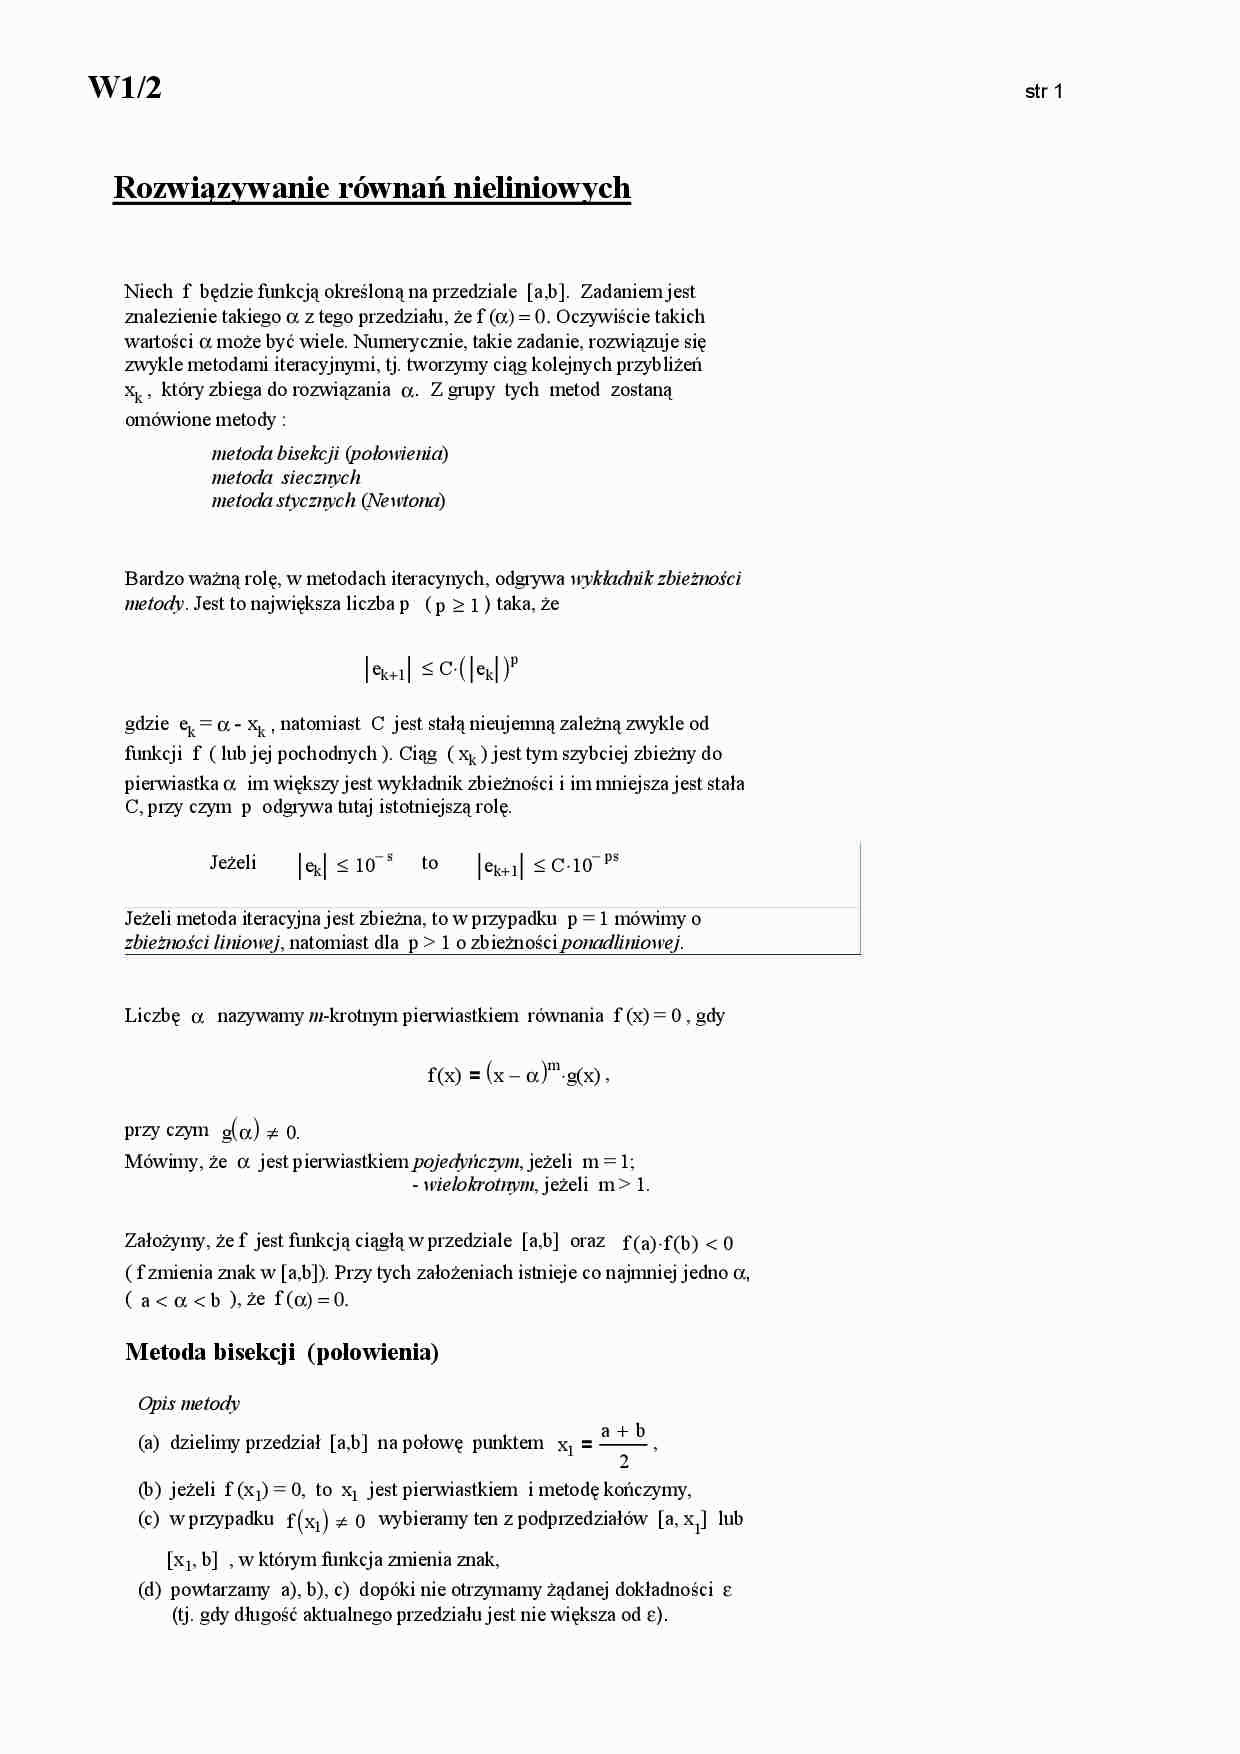 Rozwiązywanie równań nieliniowych - omówienie  - strona 1